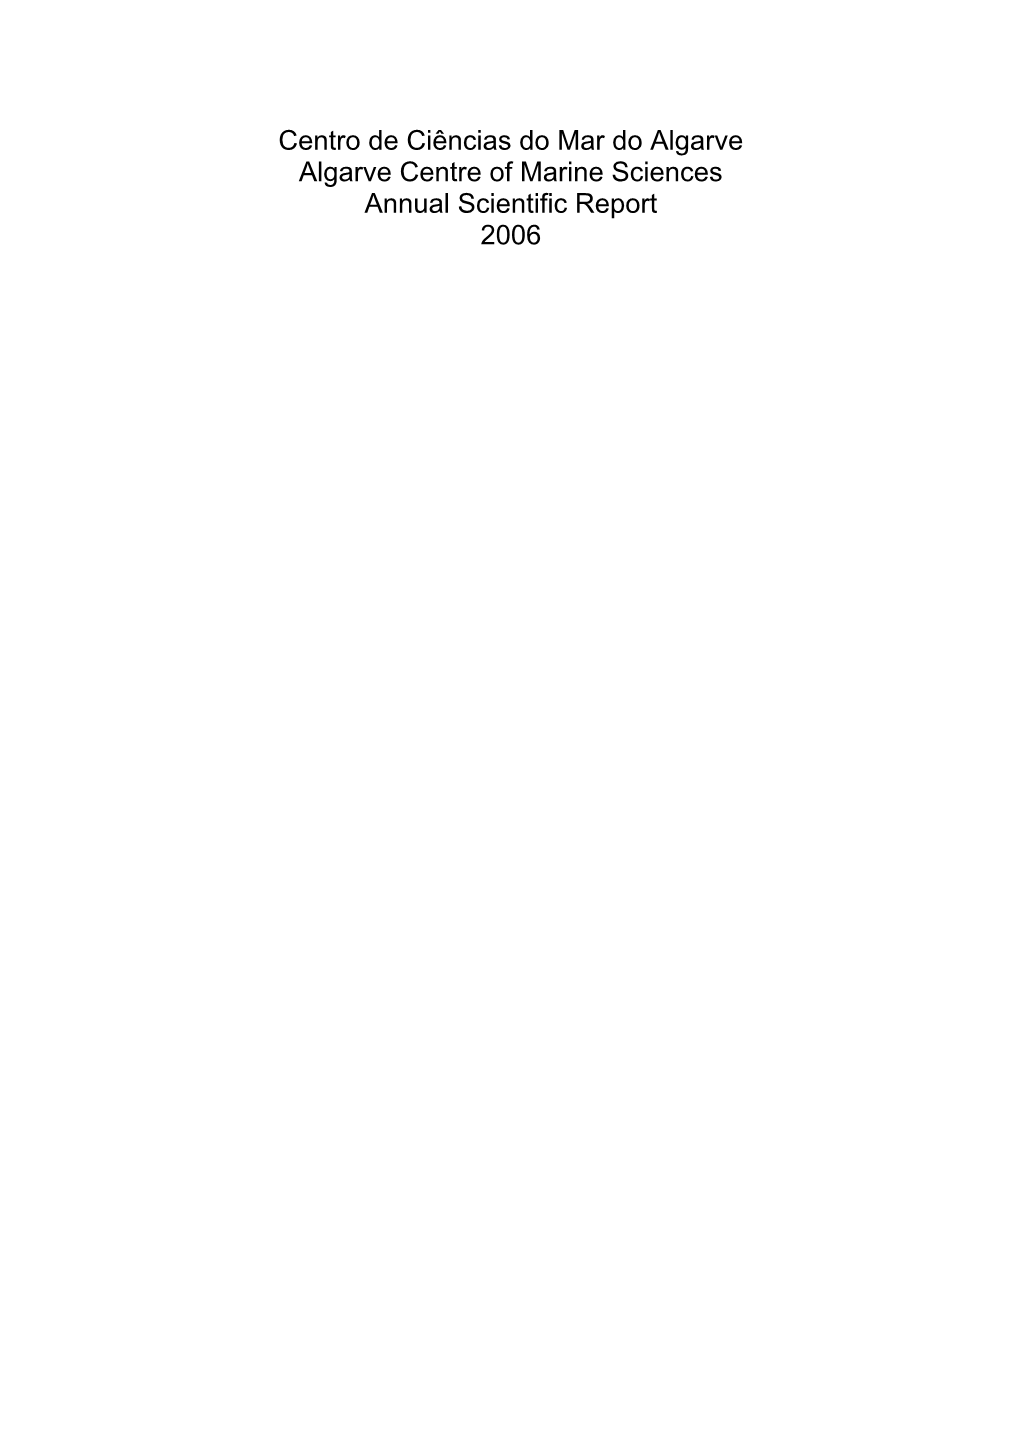 Scientific Report 2006